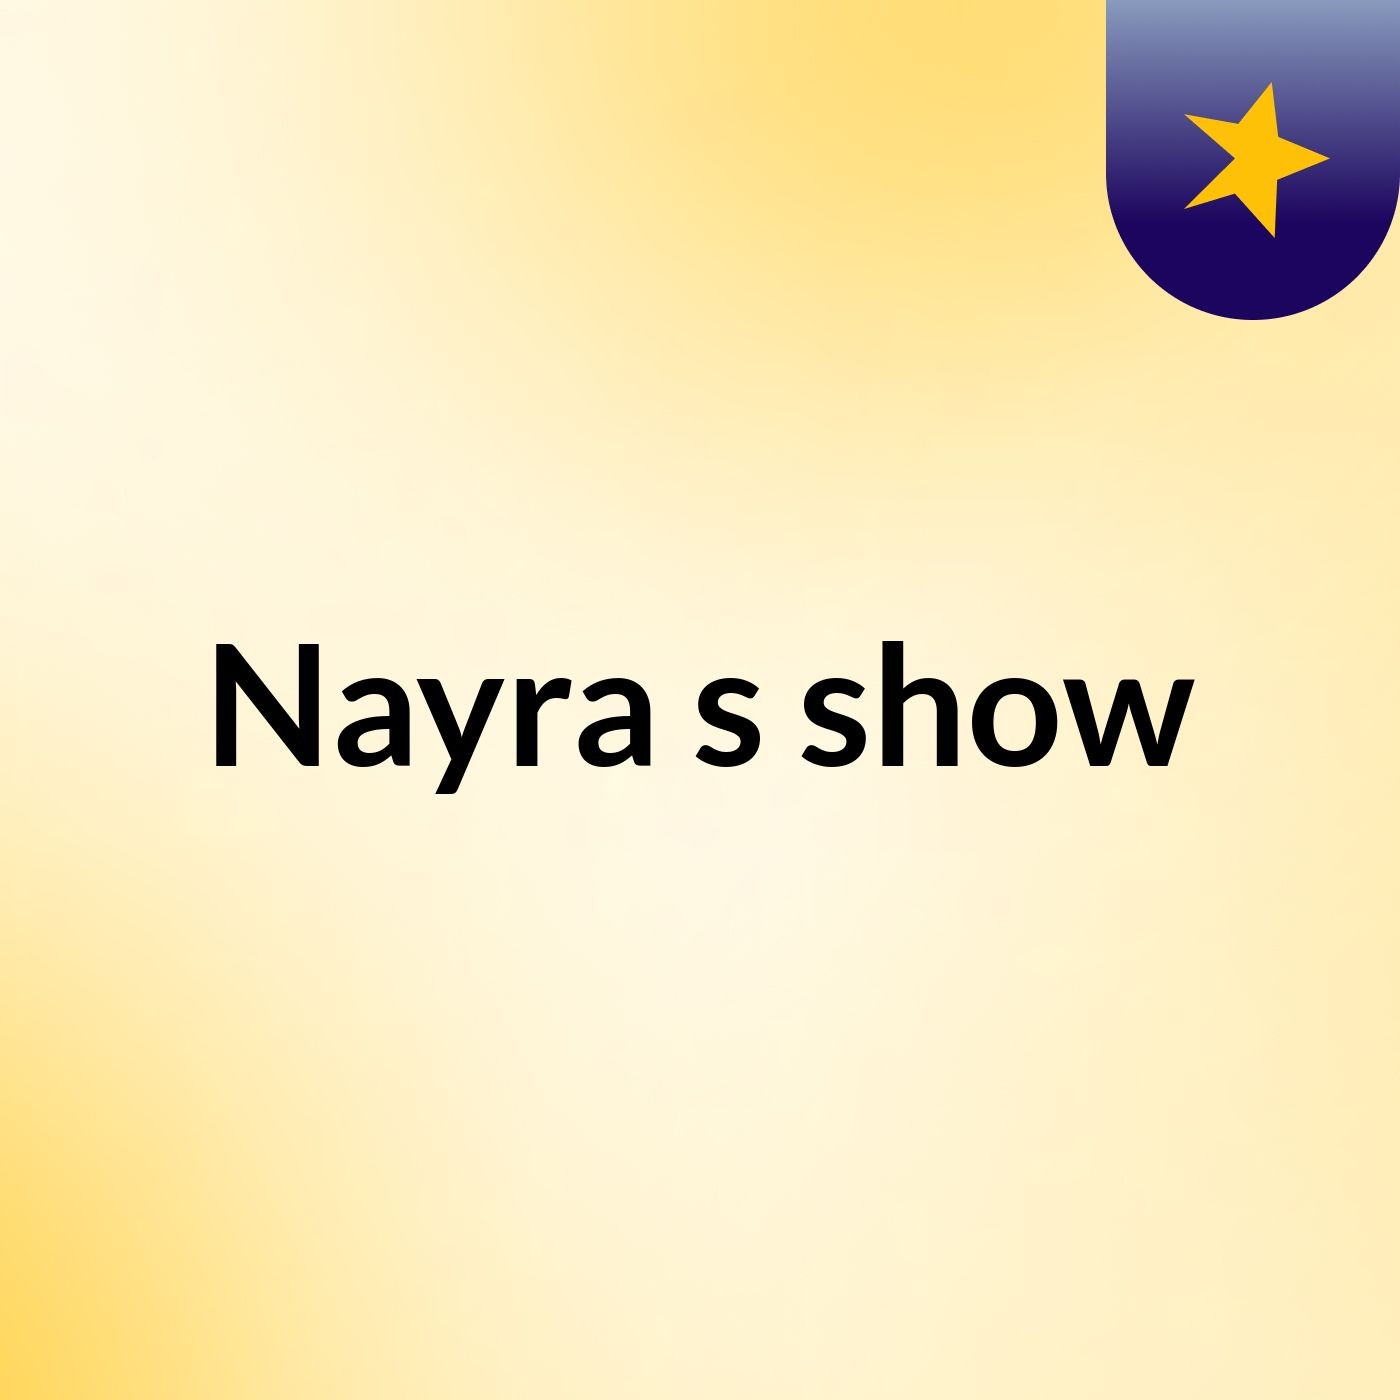 Nayra's show